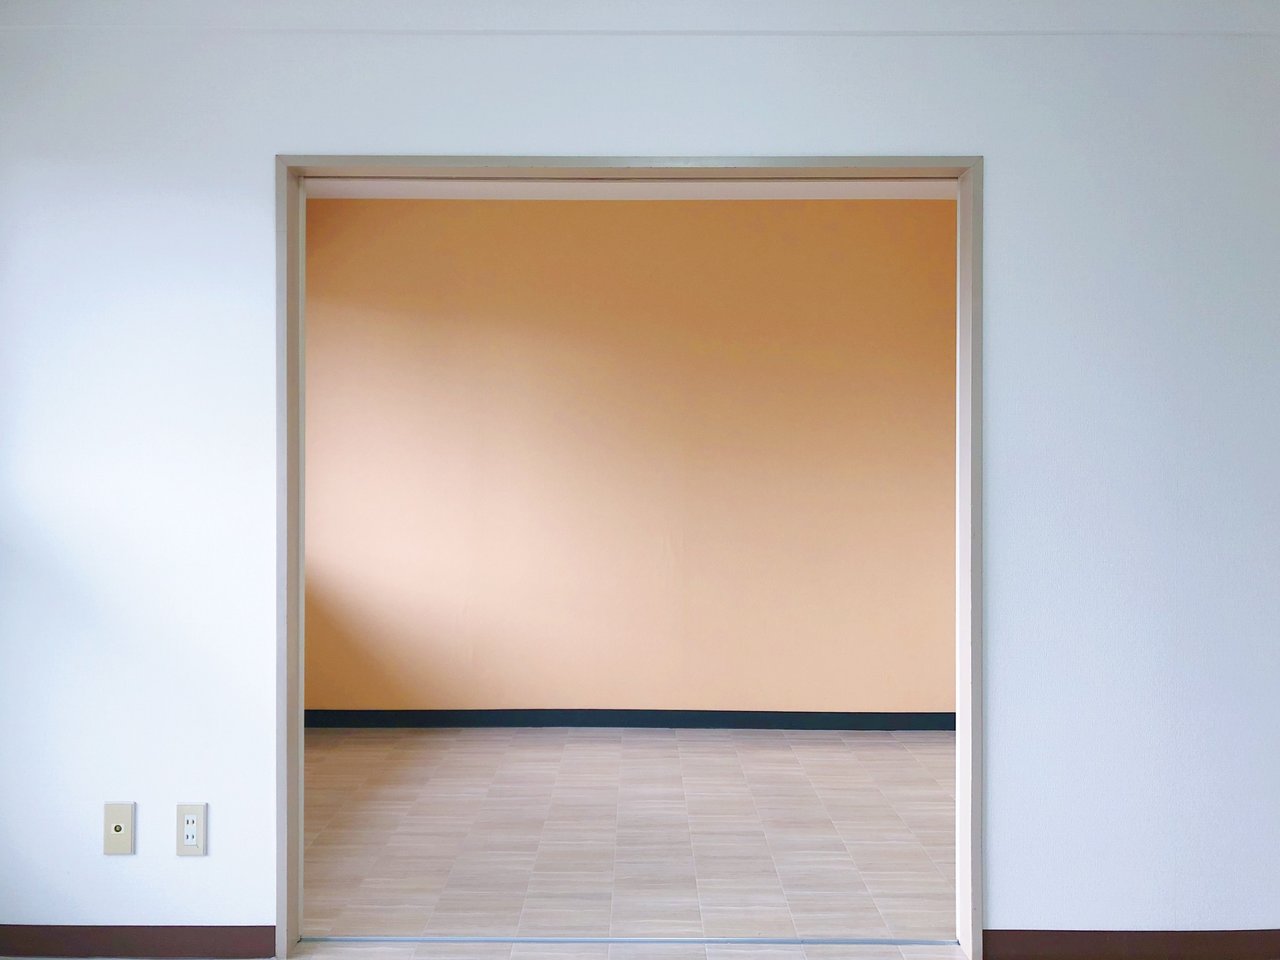 もう一つの個室とは隣り合わせで繋がっています。明るいオレンジ色の壁紙が元気をくれそう。